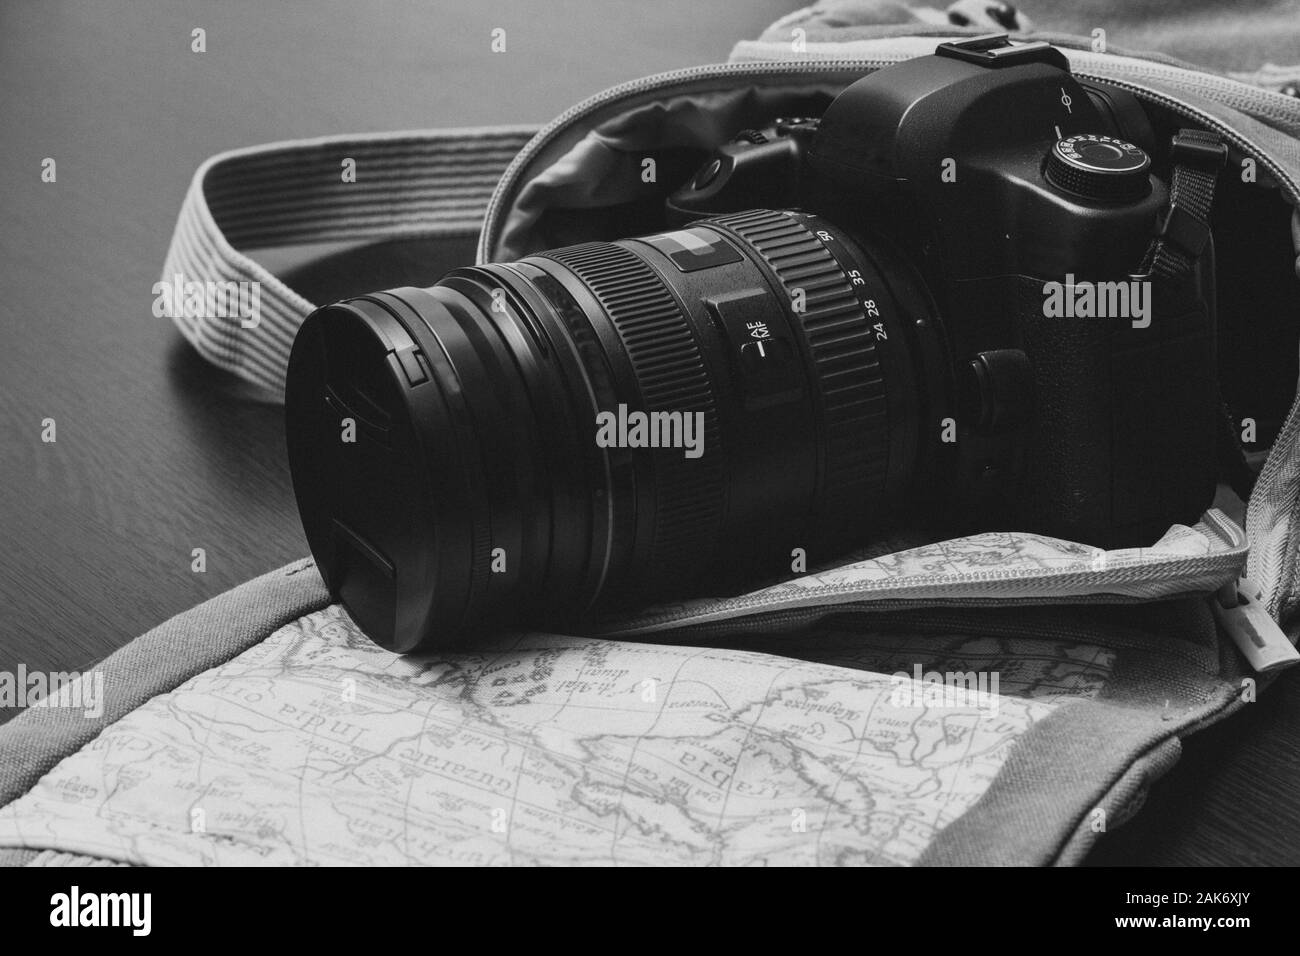 Die Kamera ist in einer Reisetasche, die auf einer hölzernen Fläche liegt Stockfoto